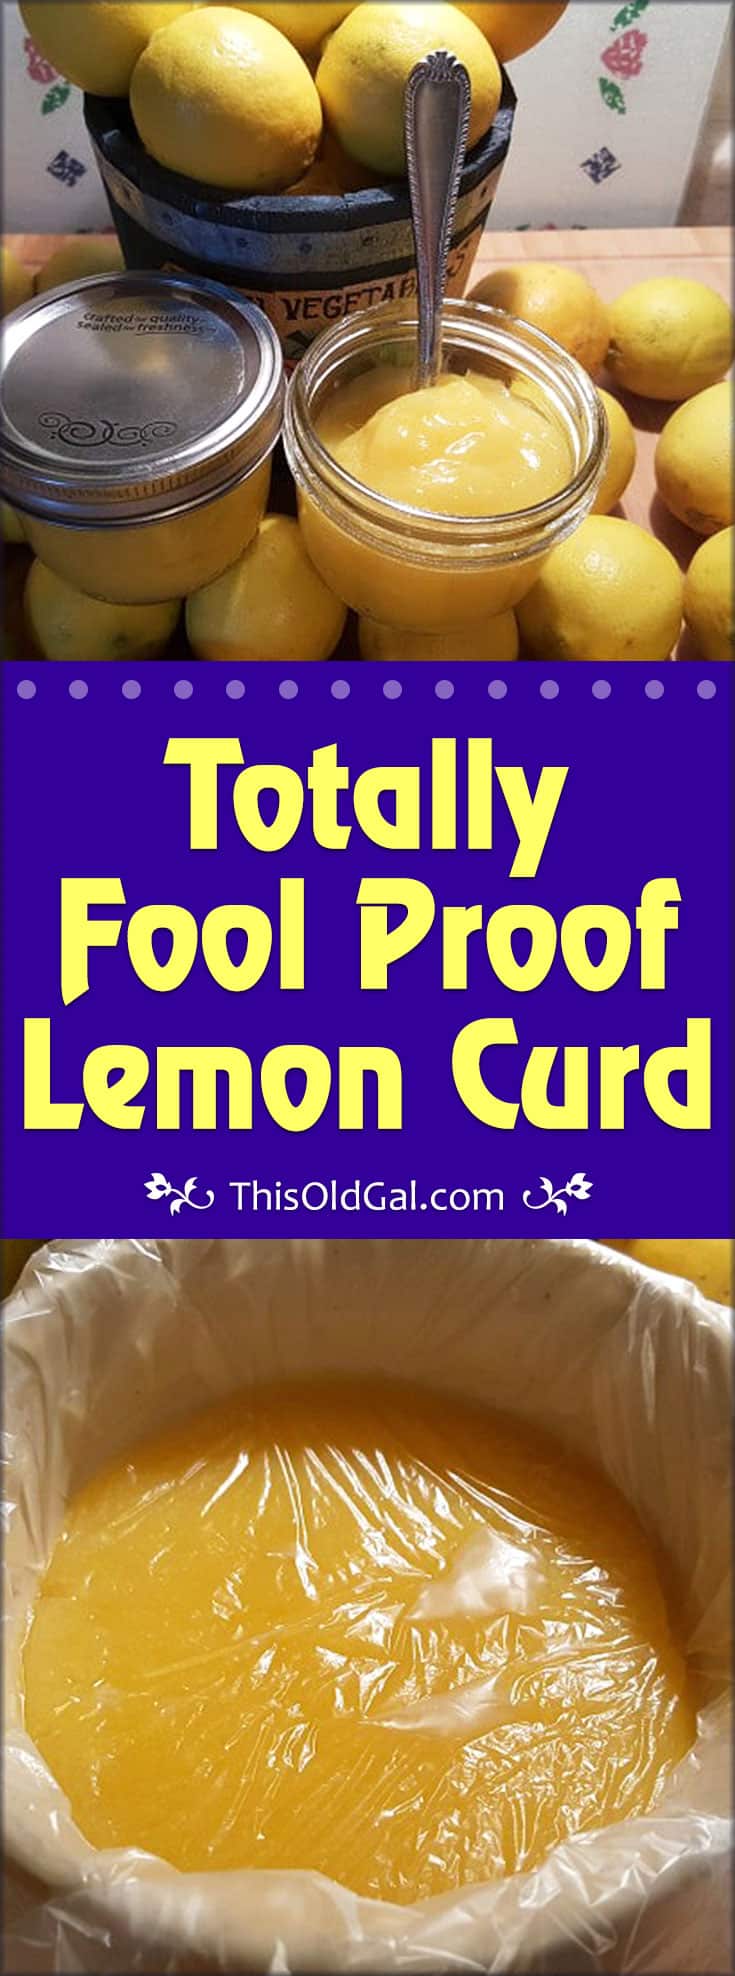 Totally Fool Proof Lemon Curd